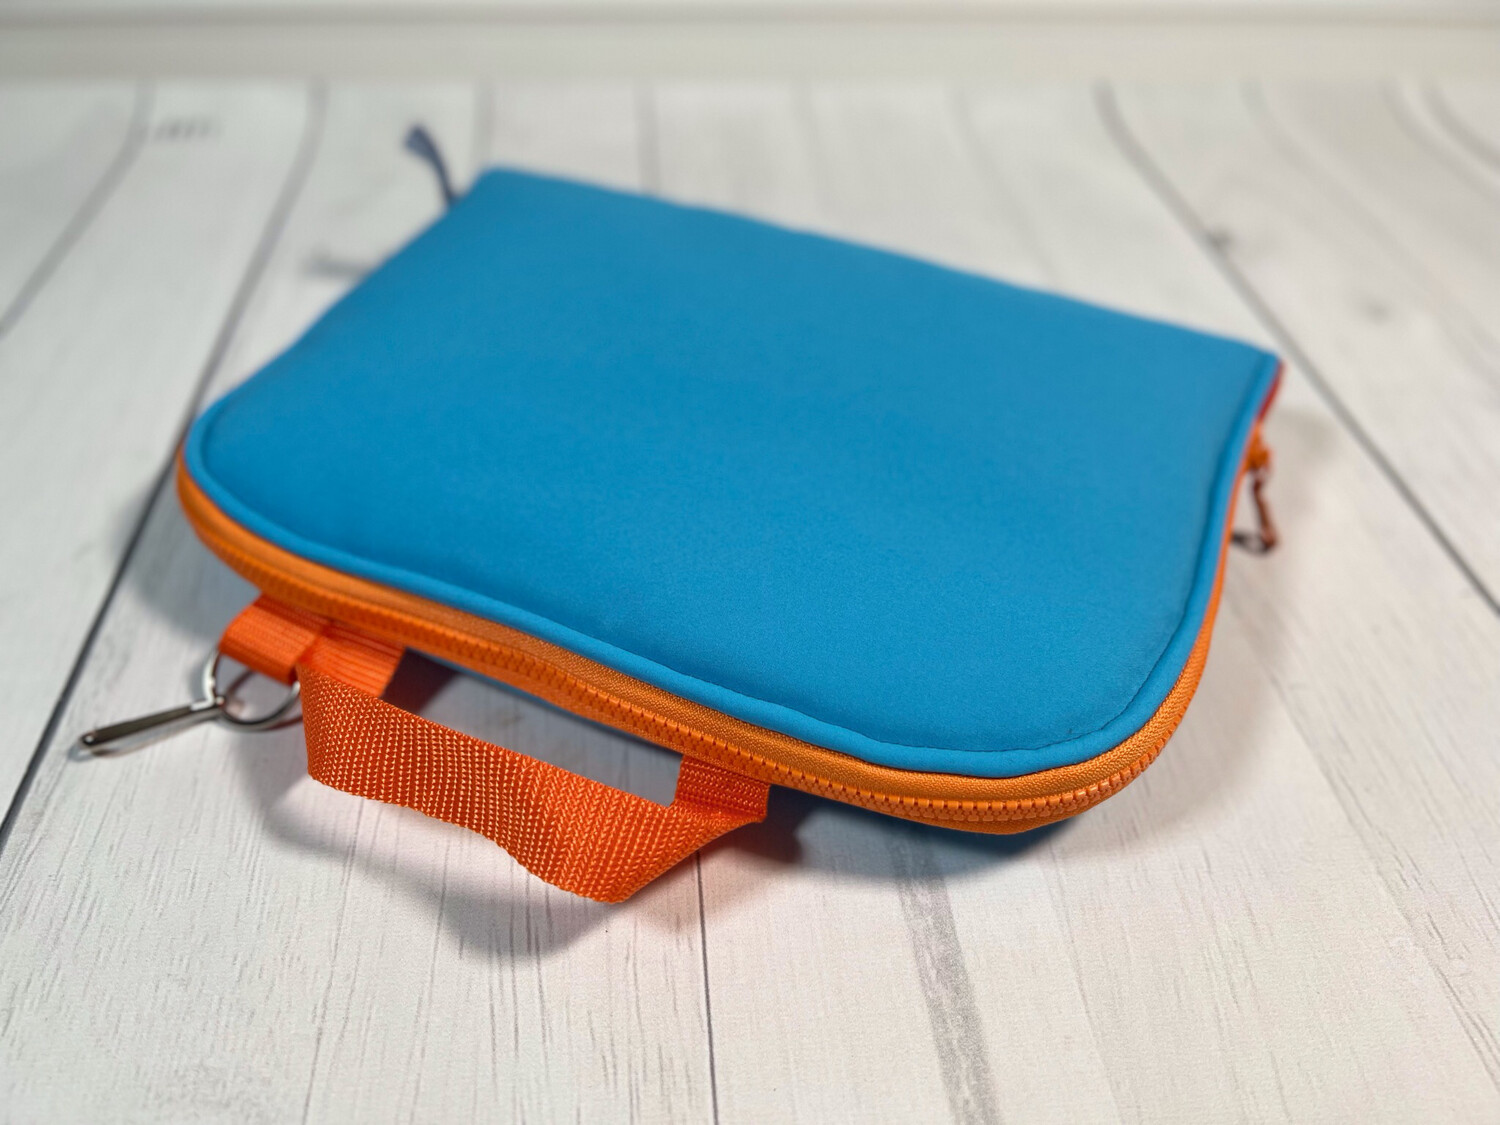 POPOPOFA // Sitzkissen TO GO // Softshell Aqua mit Minky Dots Orange  und Accessoires in Kontrastfarbe Orange 